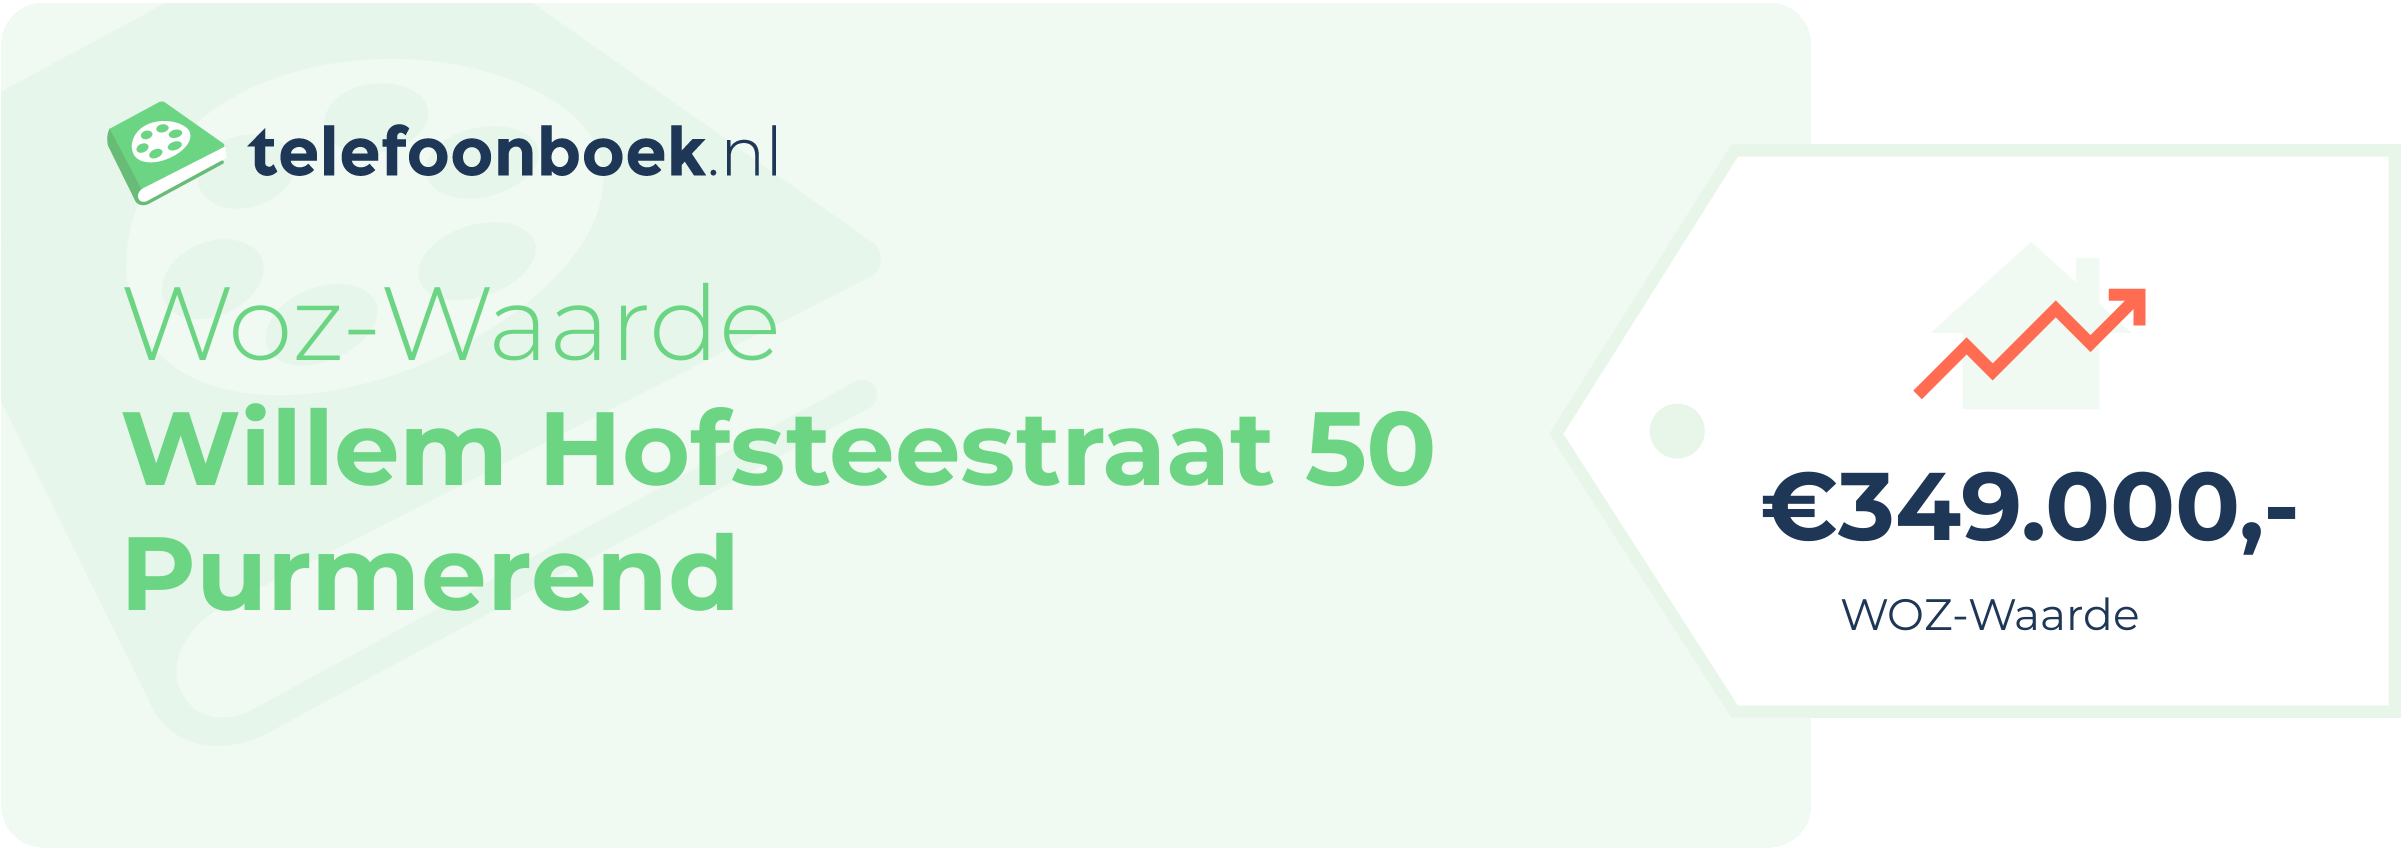 WOZ-waarde Willem Hofsteestraat 50 Purmerend